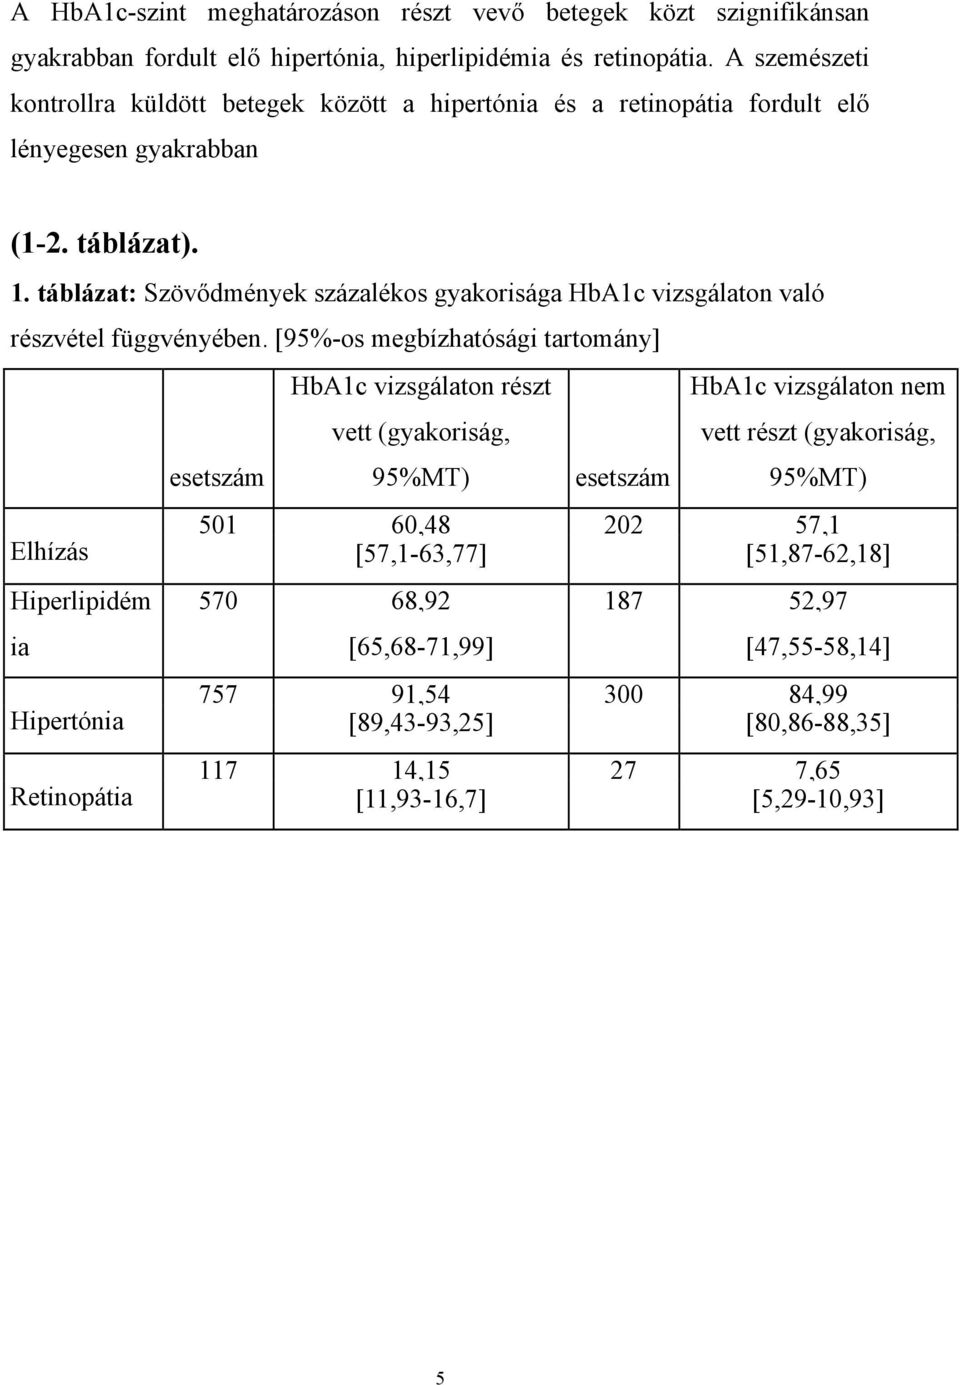 táblázat: Szövődmények százalékos gyakorisága HbA1c vizsgálaton való részvétel függvényében.